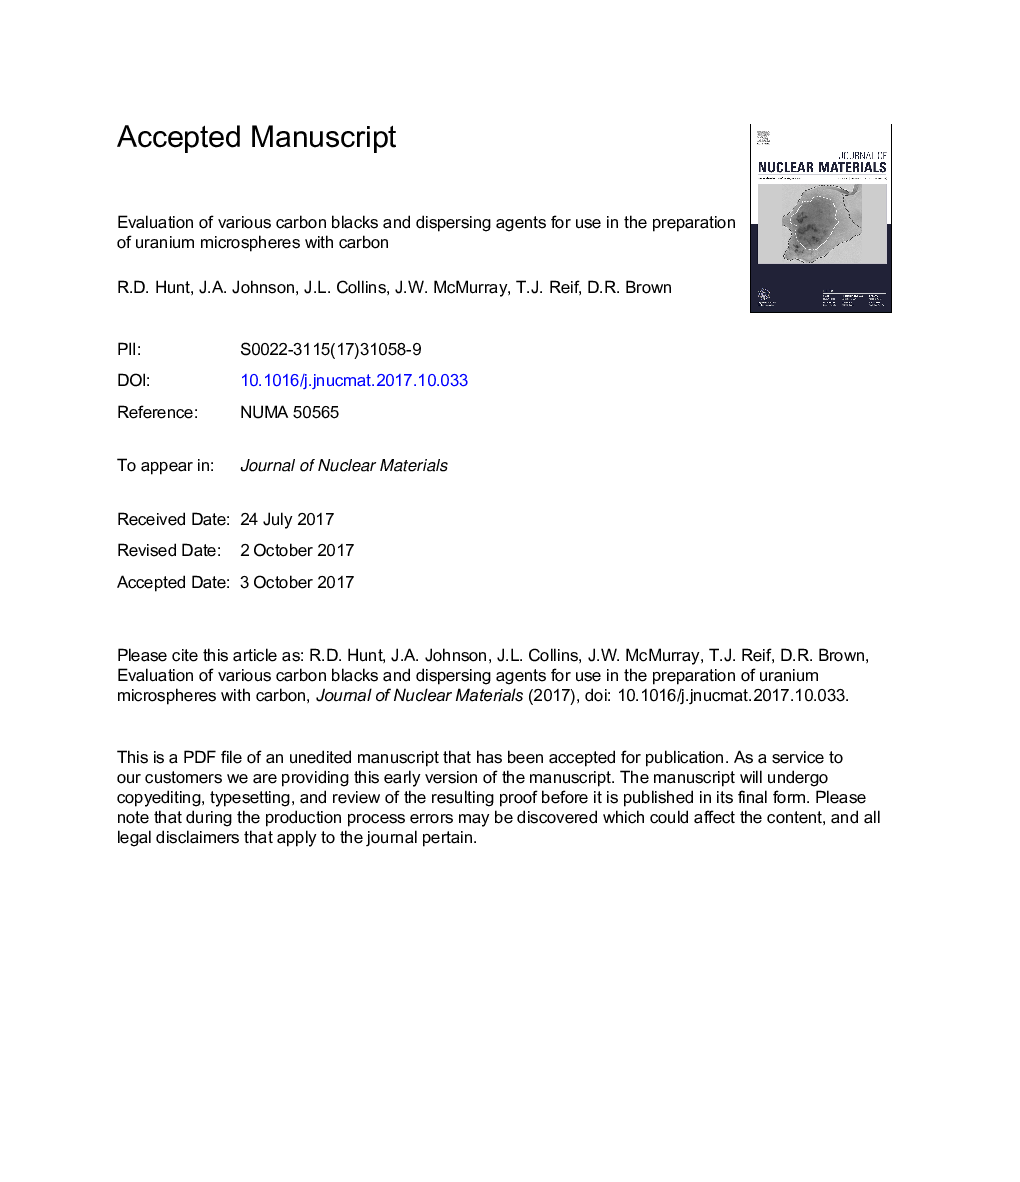 ارزیابی سیاه و سفید کربن های مختلف و مواد پراکنده برای استفاده در آماده سازی میکروسپرسهای اورانیوم با کربن 